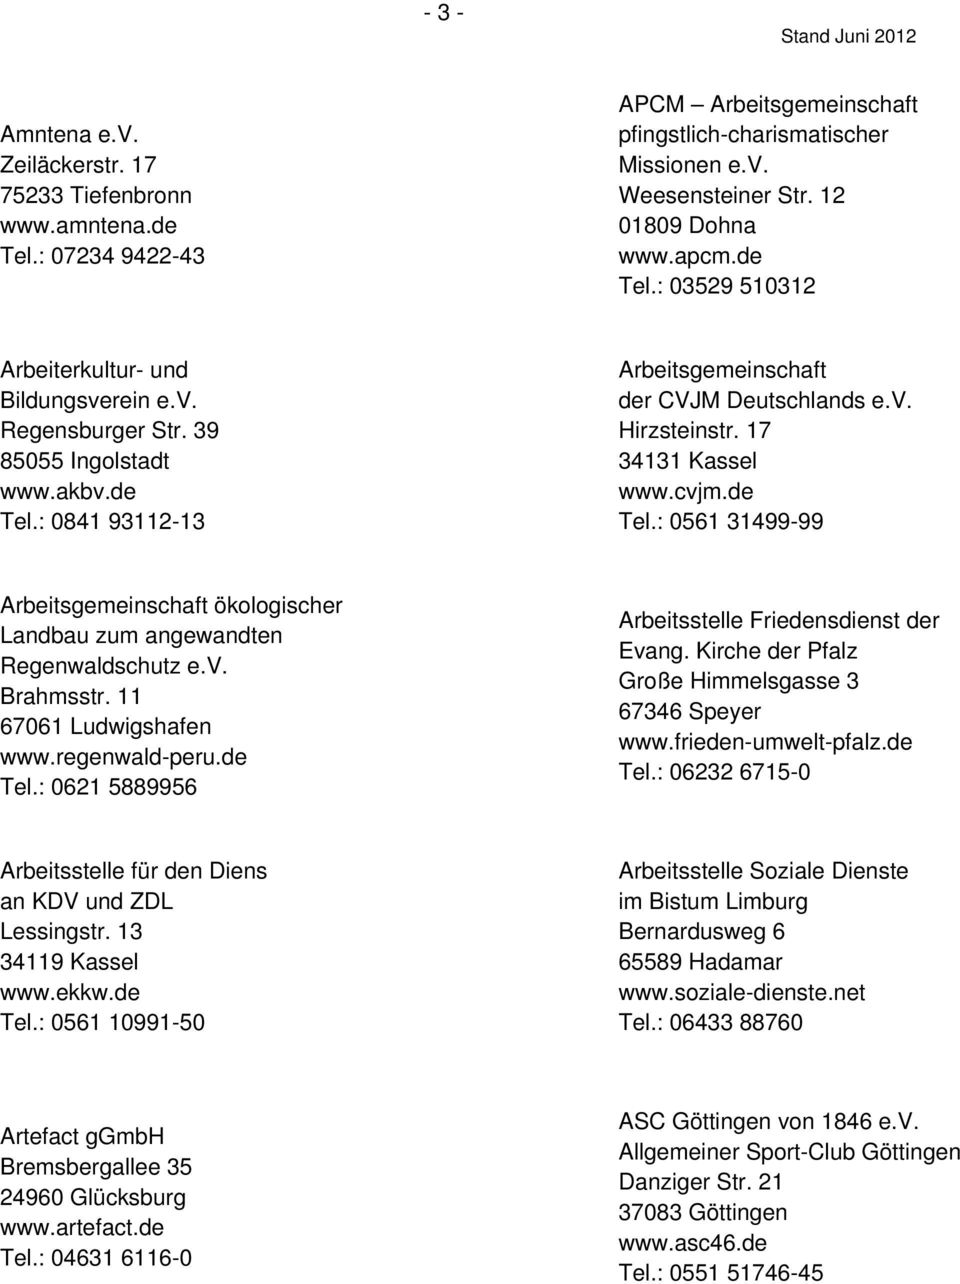 17 34131 Kassel www.cvjm.de Tel.: 0561 31499-99 Arbeitsgemeinschaft ökologischer Landbau zum angewandten Regenwaldschutz e.v. Brahmsstr. 11 67061 Ludwigshafen www.regenwald-peru.de Tel.: 0621 5889956 Arbeitsstelle Friedensdienst der Evang.